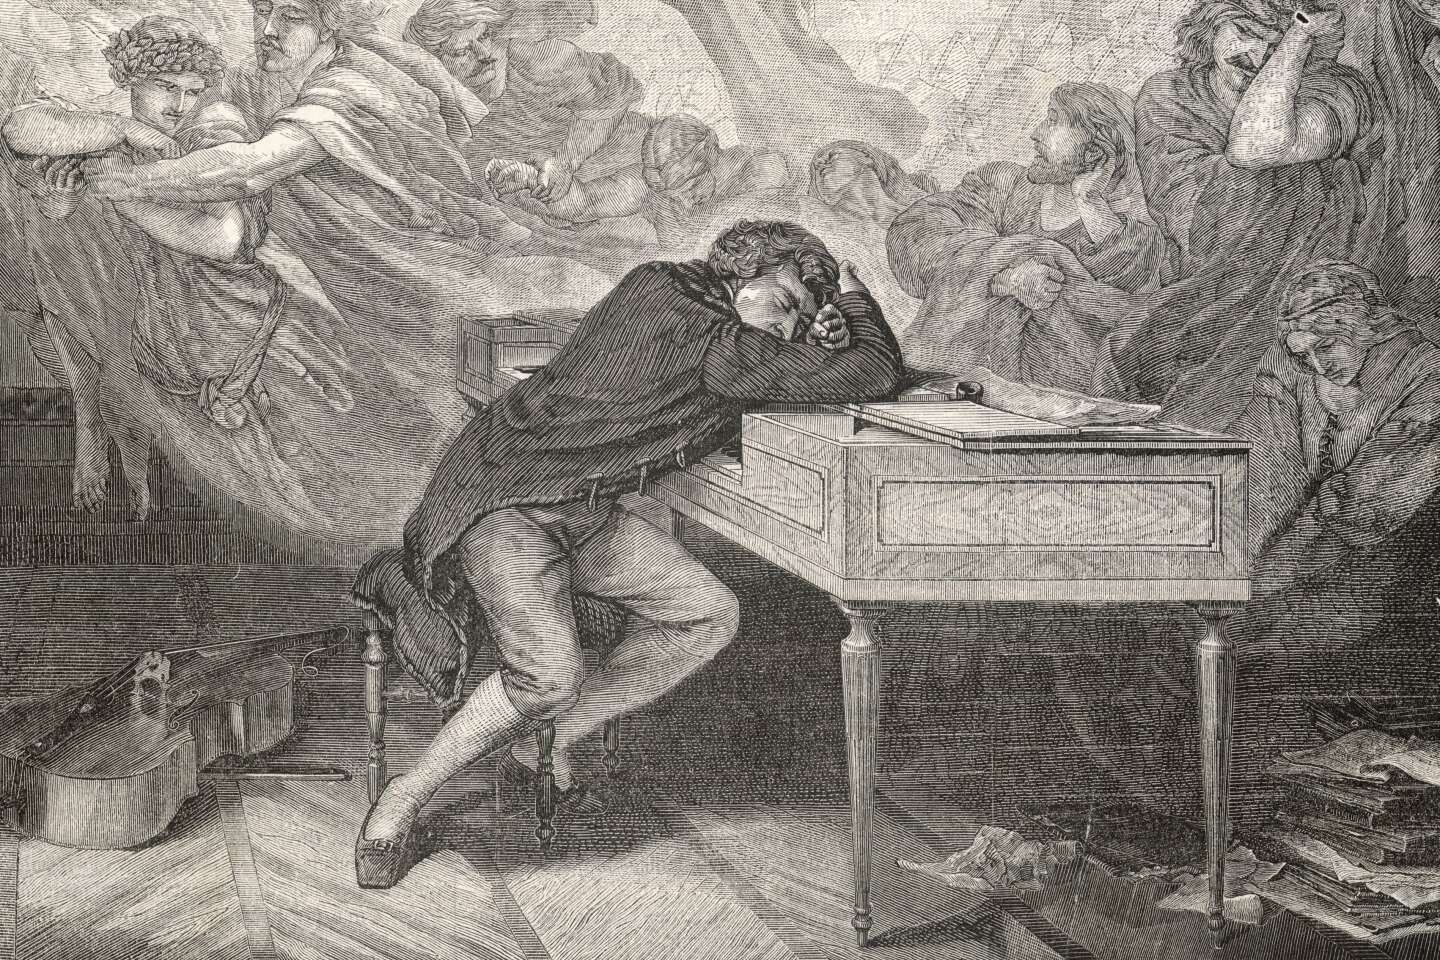 L’analyse génétique des cheveux de Beethoven éclaire les causes possibles de sa mort